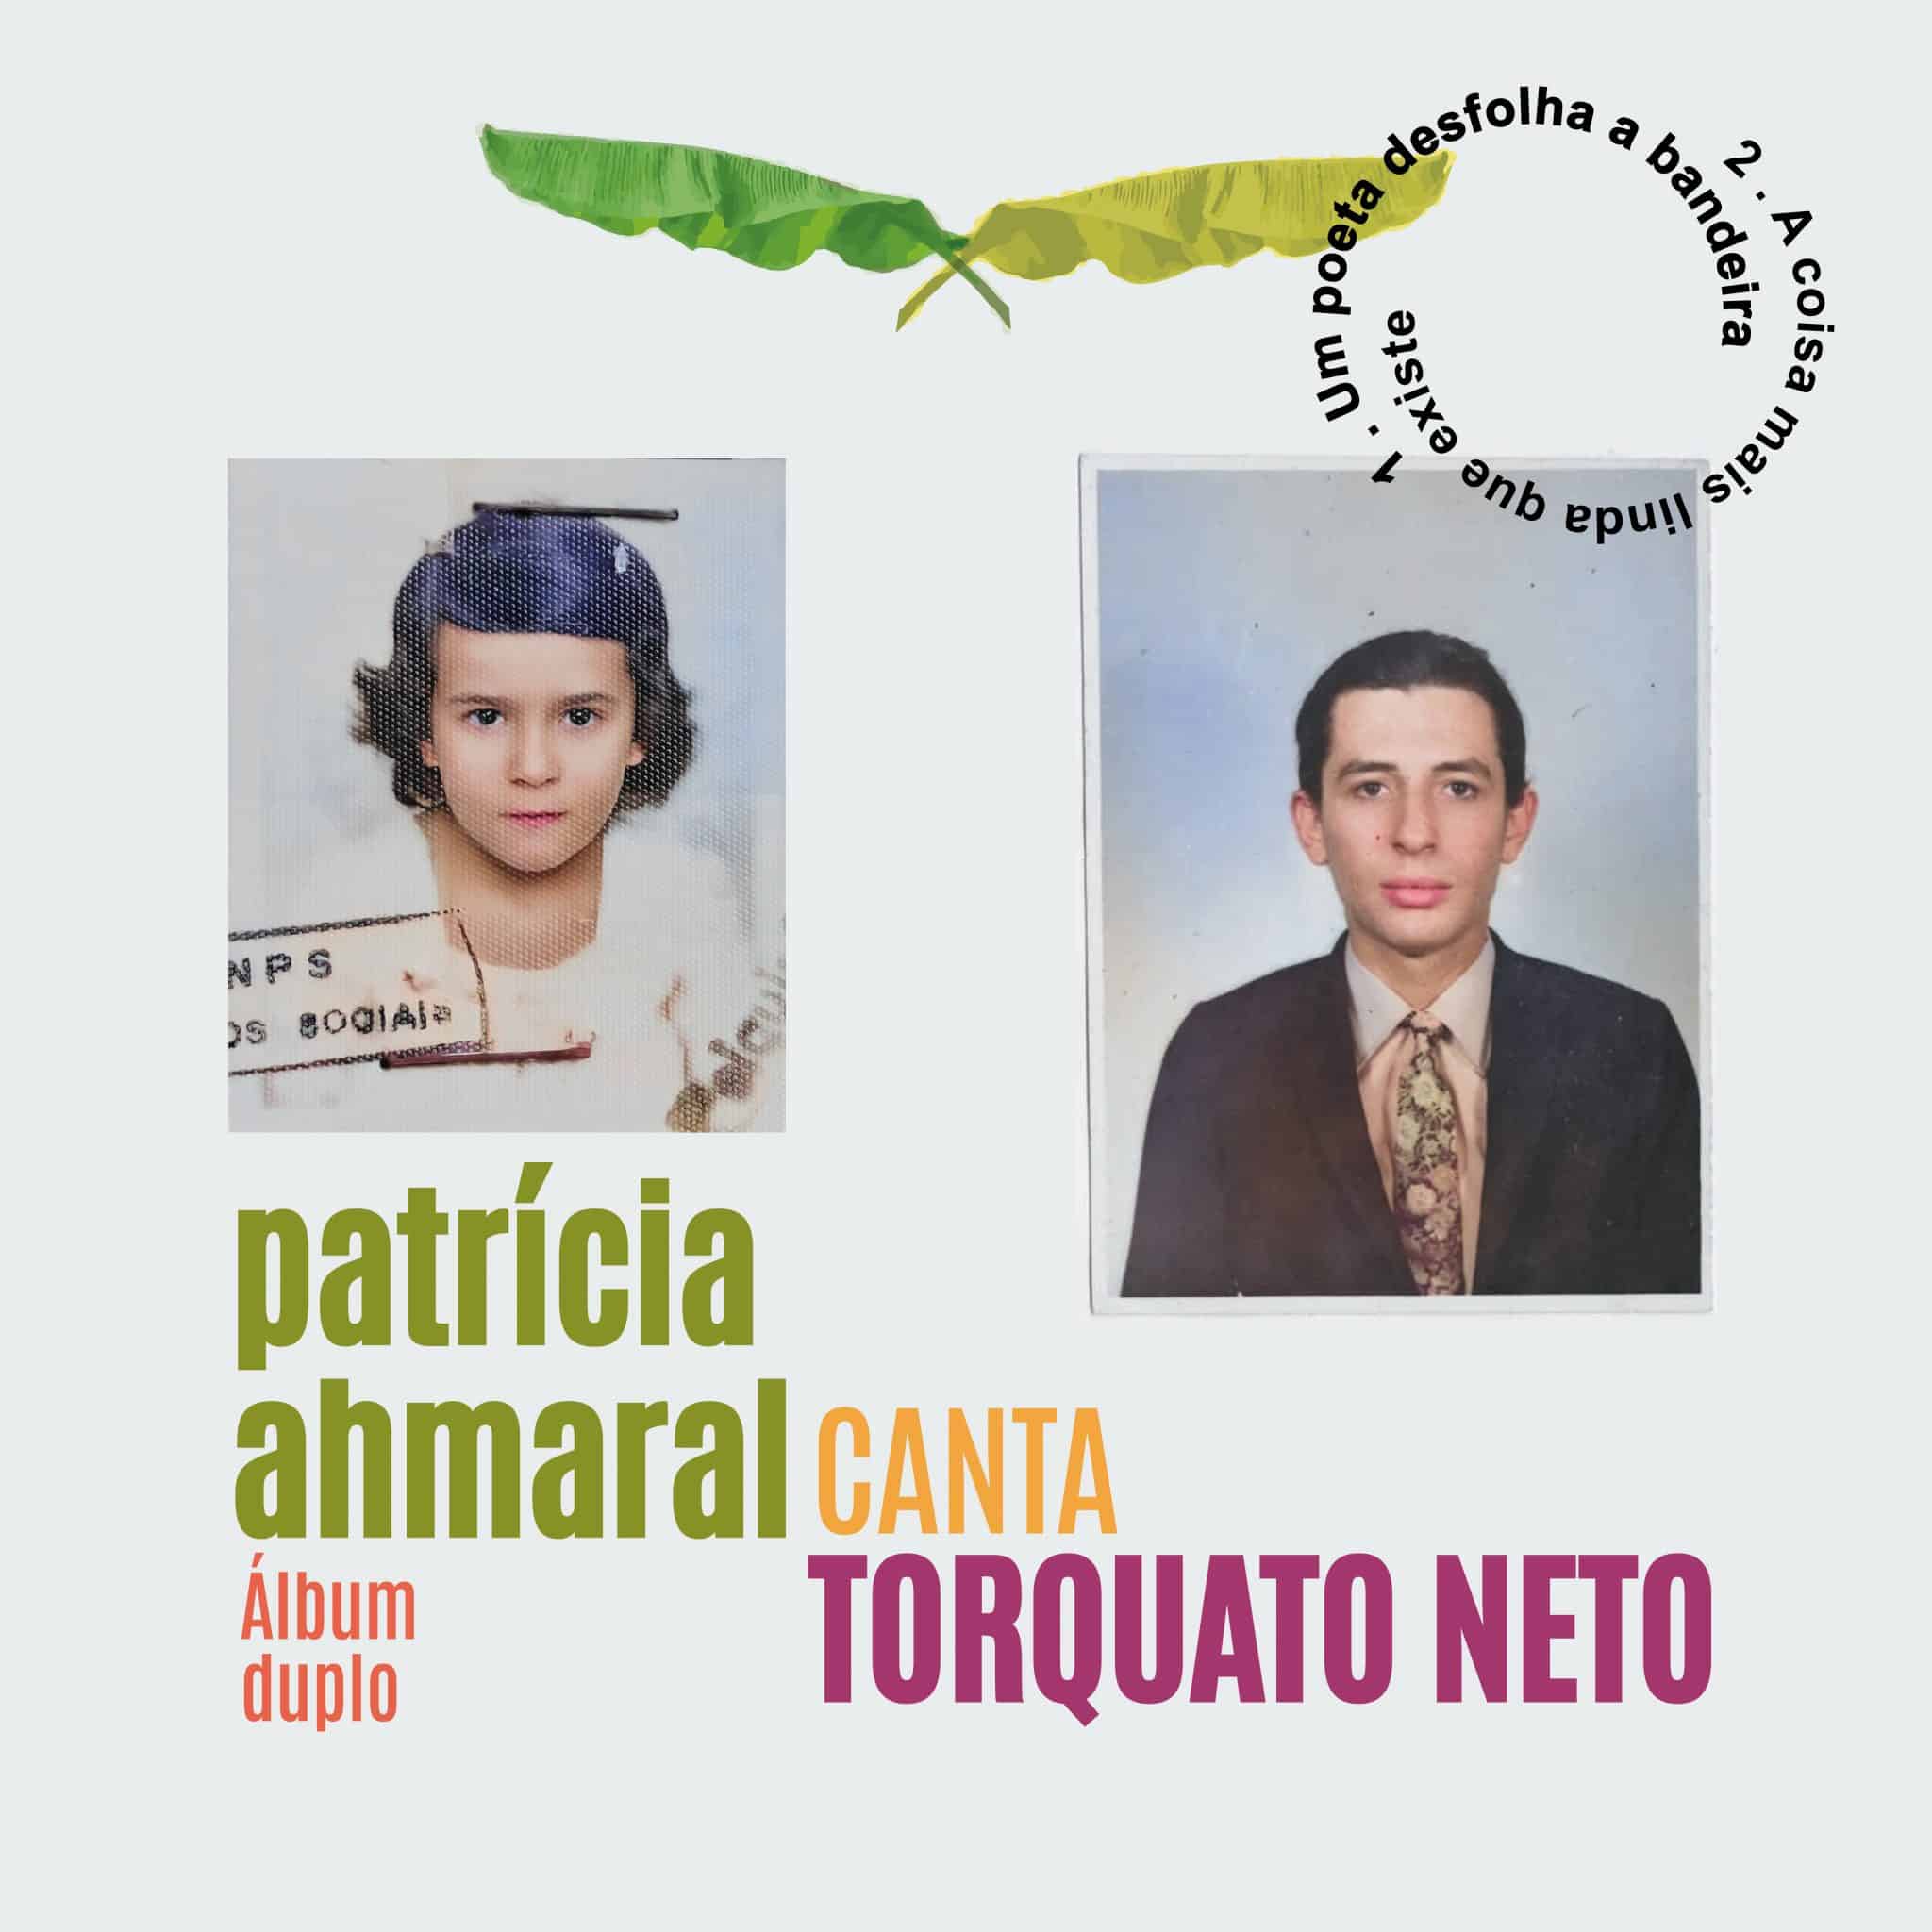 revistaprosaversoearte.com - Patrícia Ahmaral Canta Torquato Neto, em álbum duplo